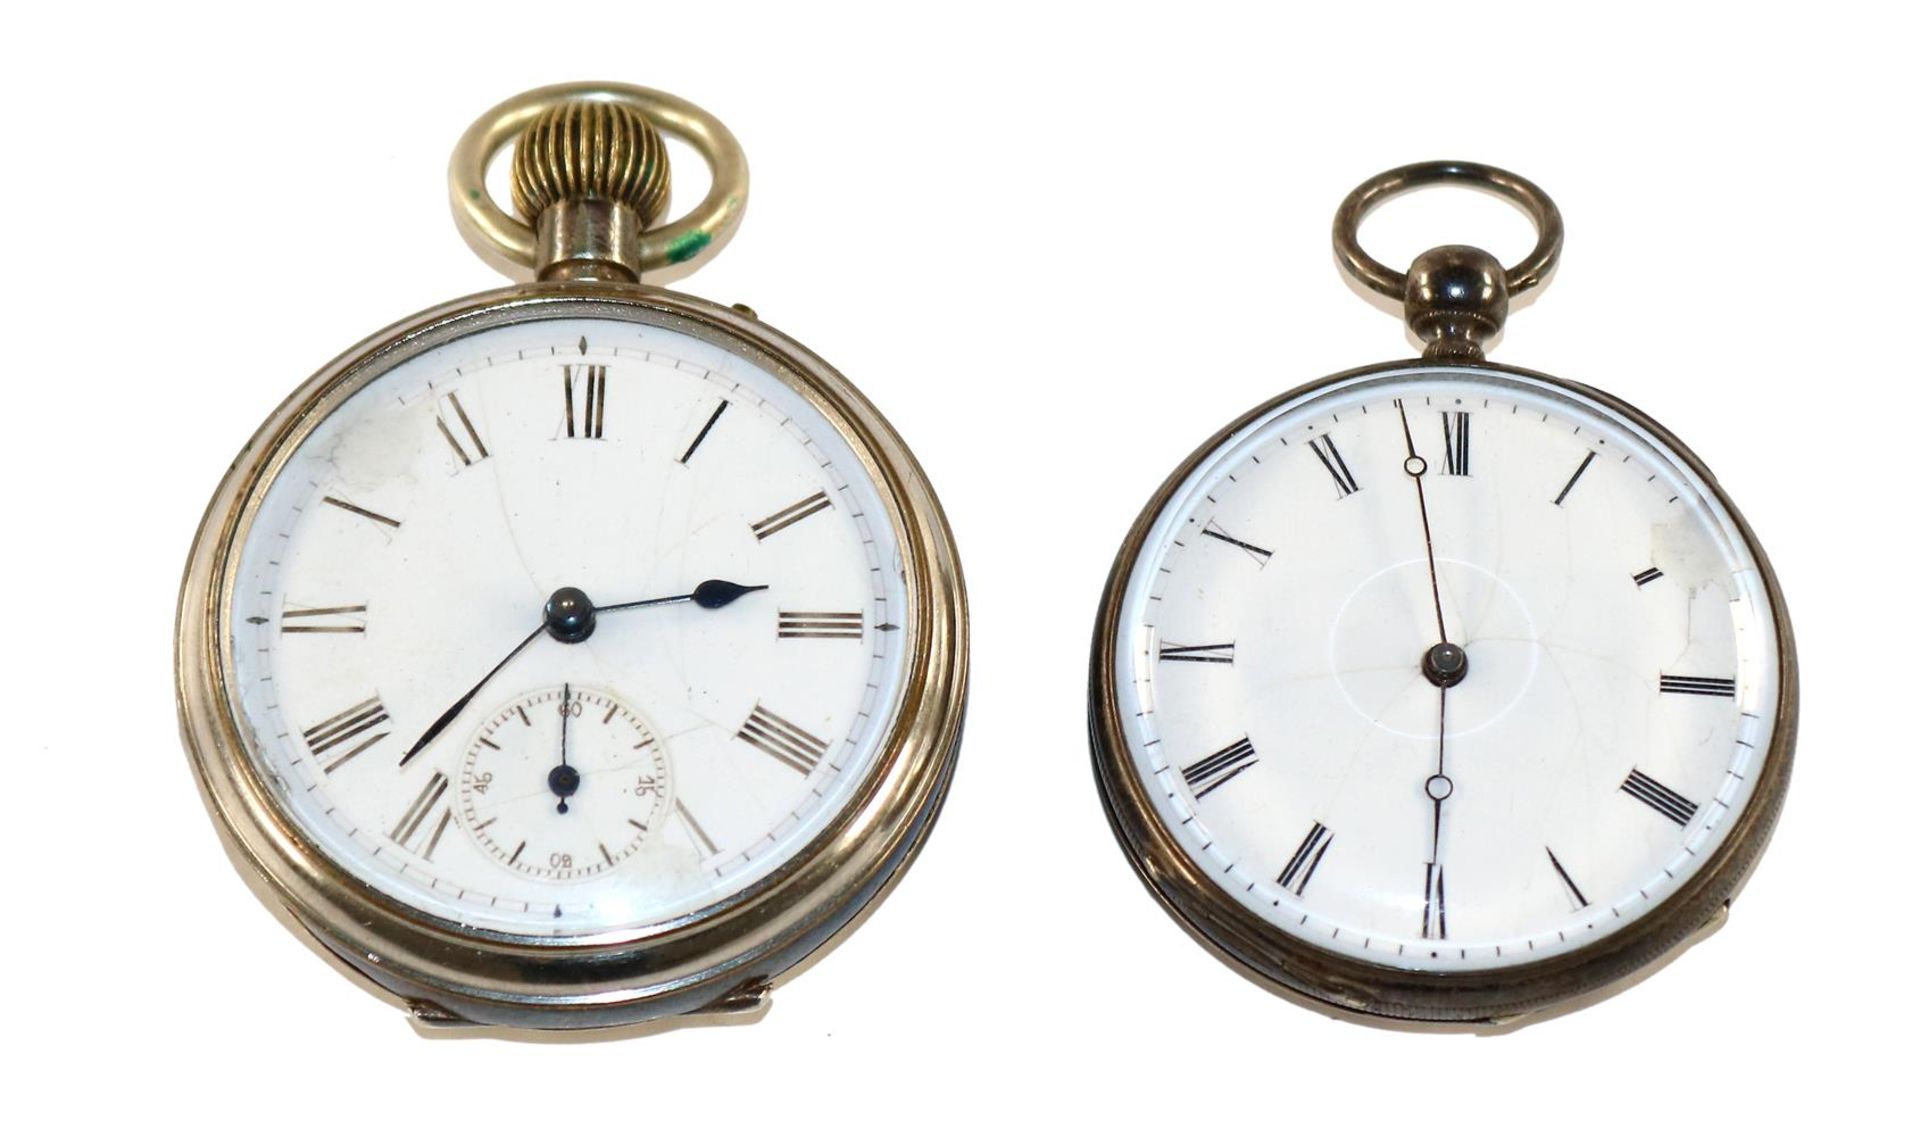 2 Taschenuhren Silber2 Taschenuhren Silber um 1900-20. Beide Gehäuse ungestempelt. Sil2 Ta